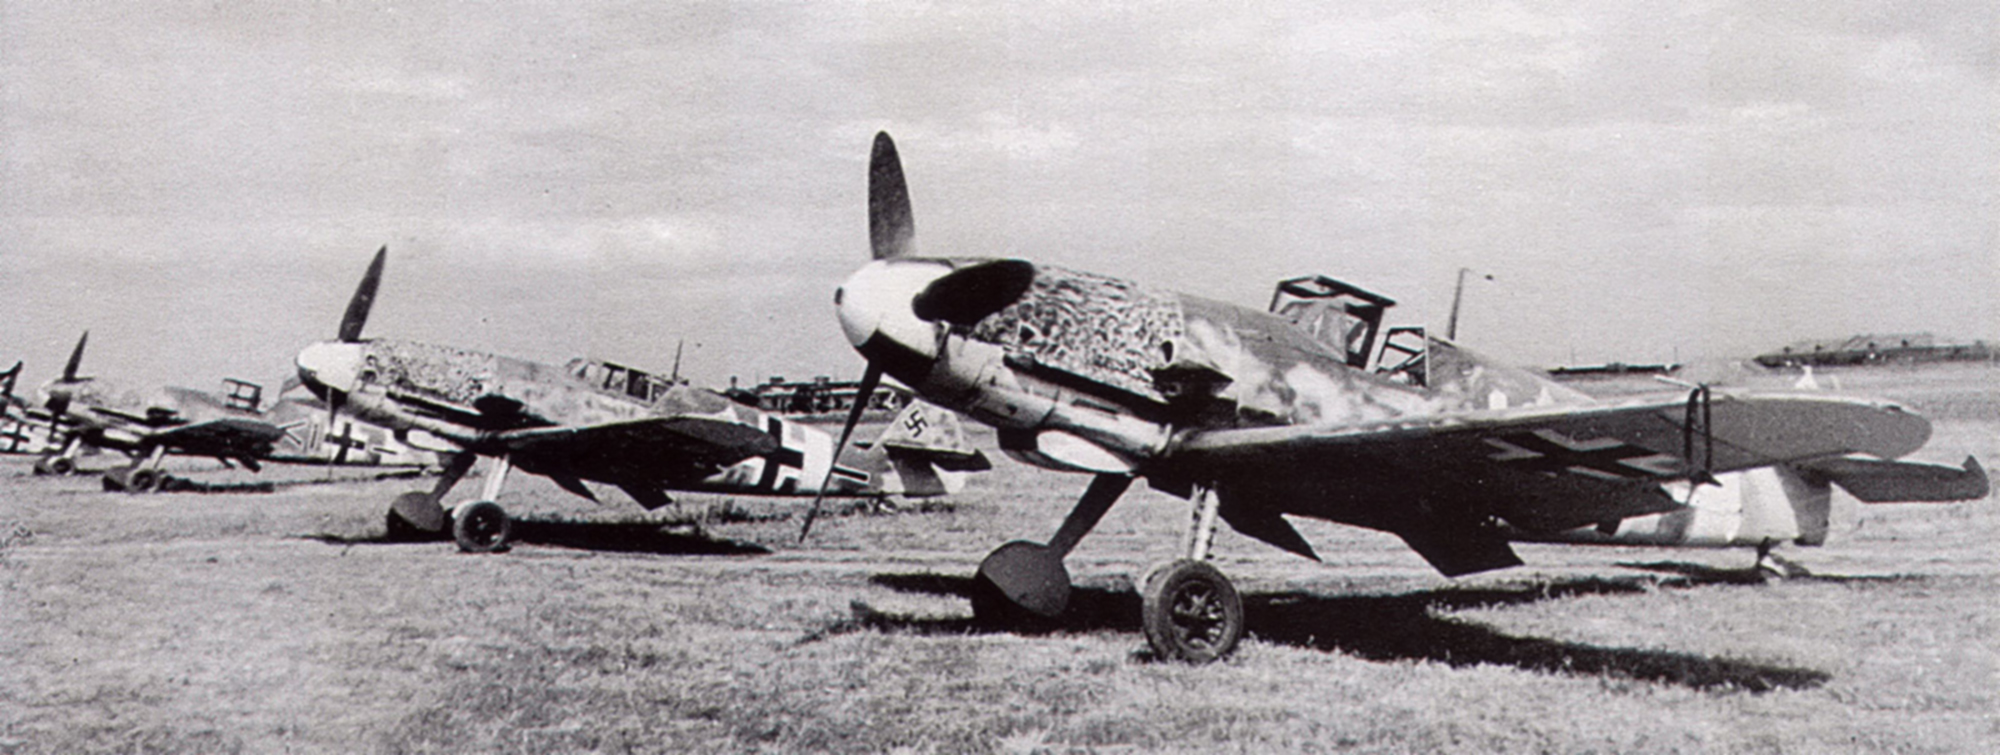 Messerschmitt-Bf-109G2-Stab-II.JG52-Wink